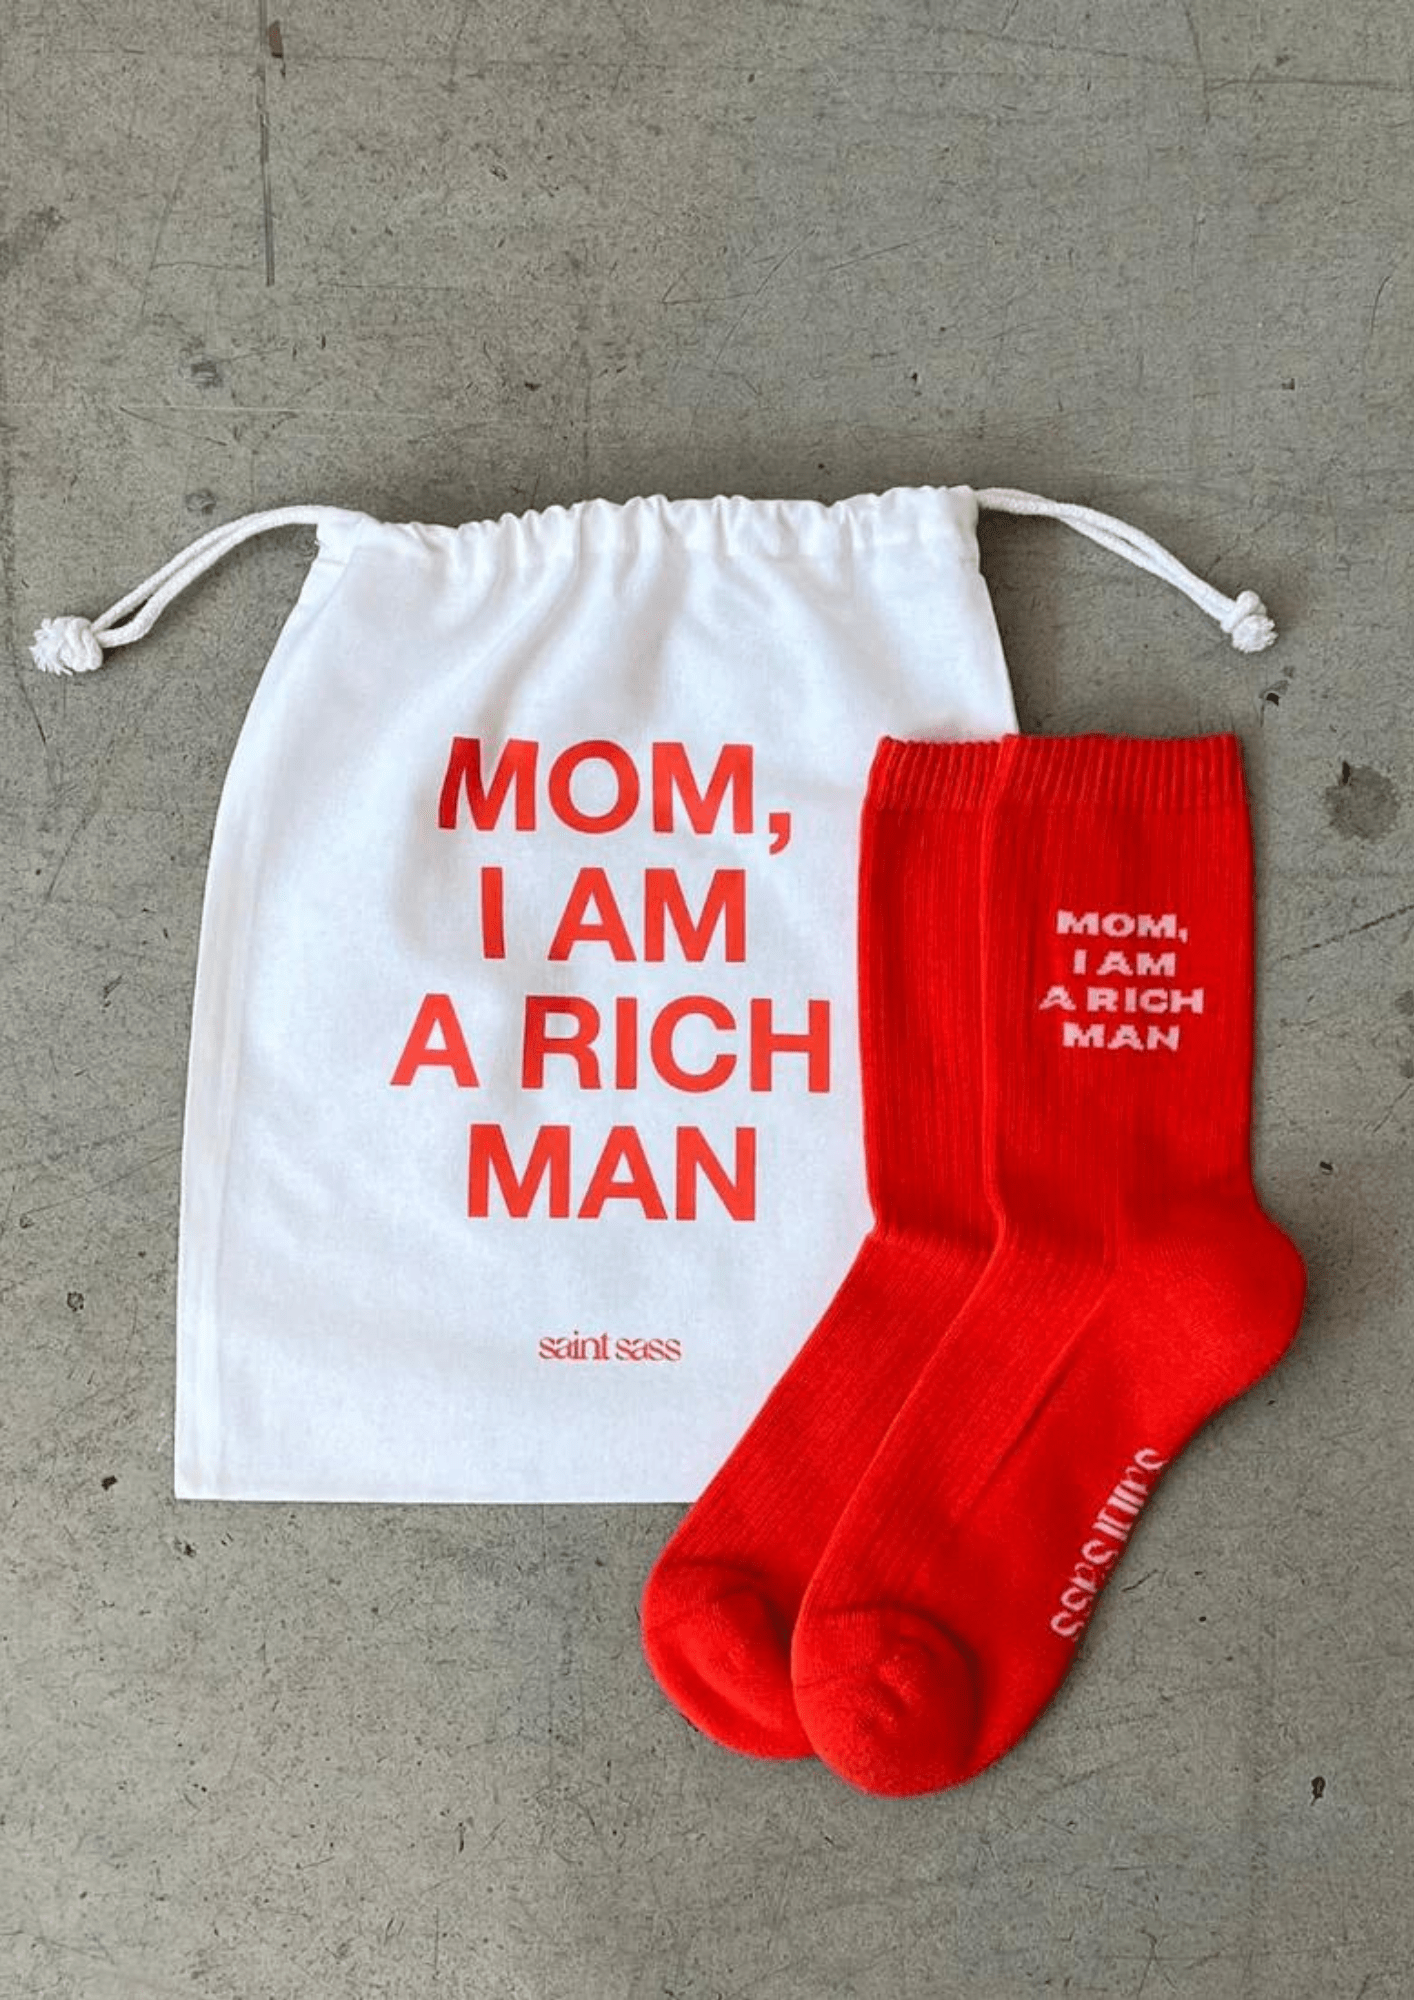 Maman, je suis une chaussette riche